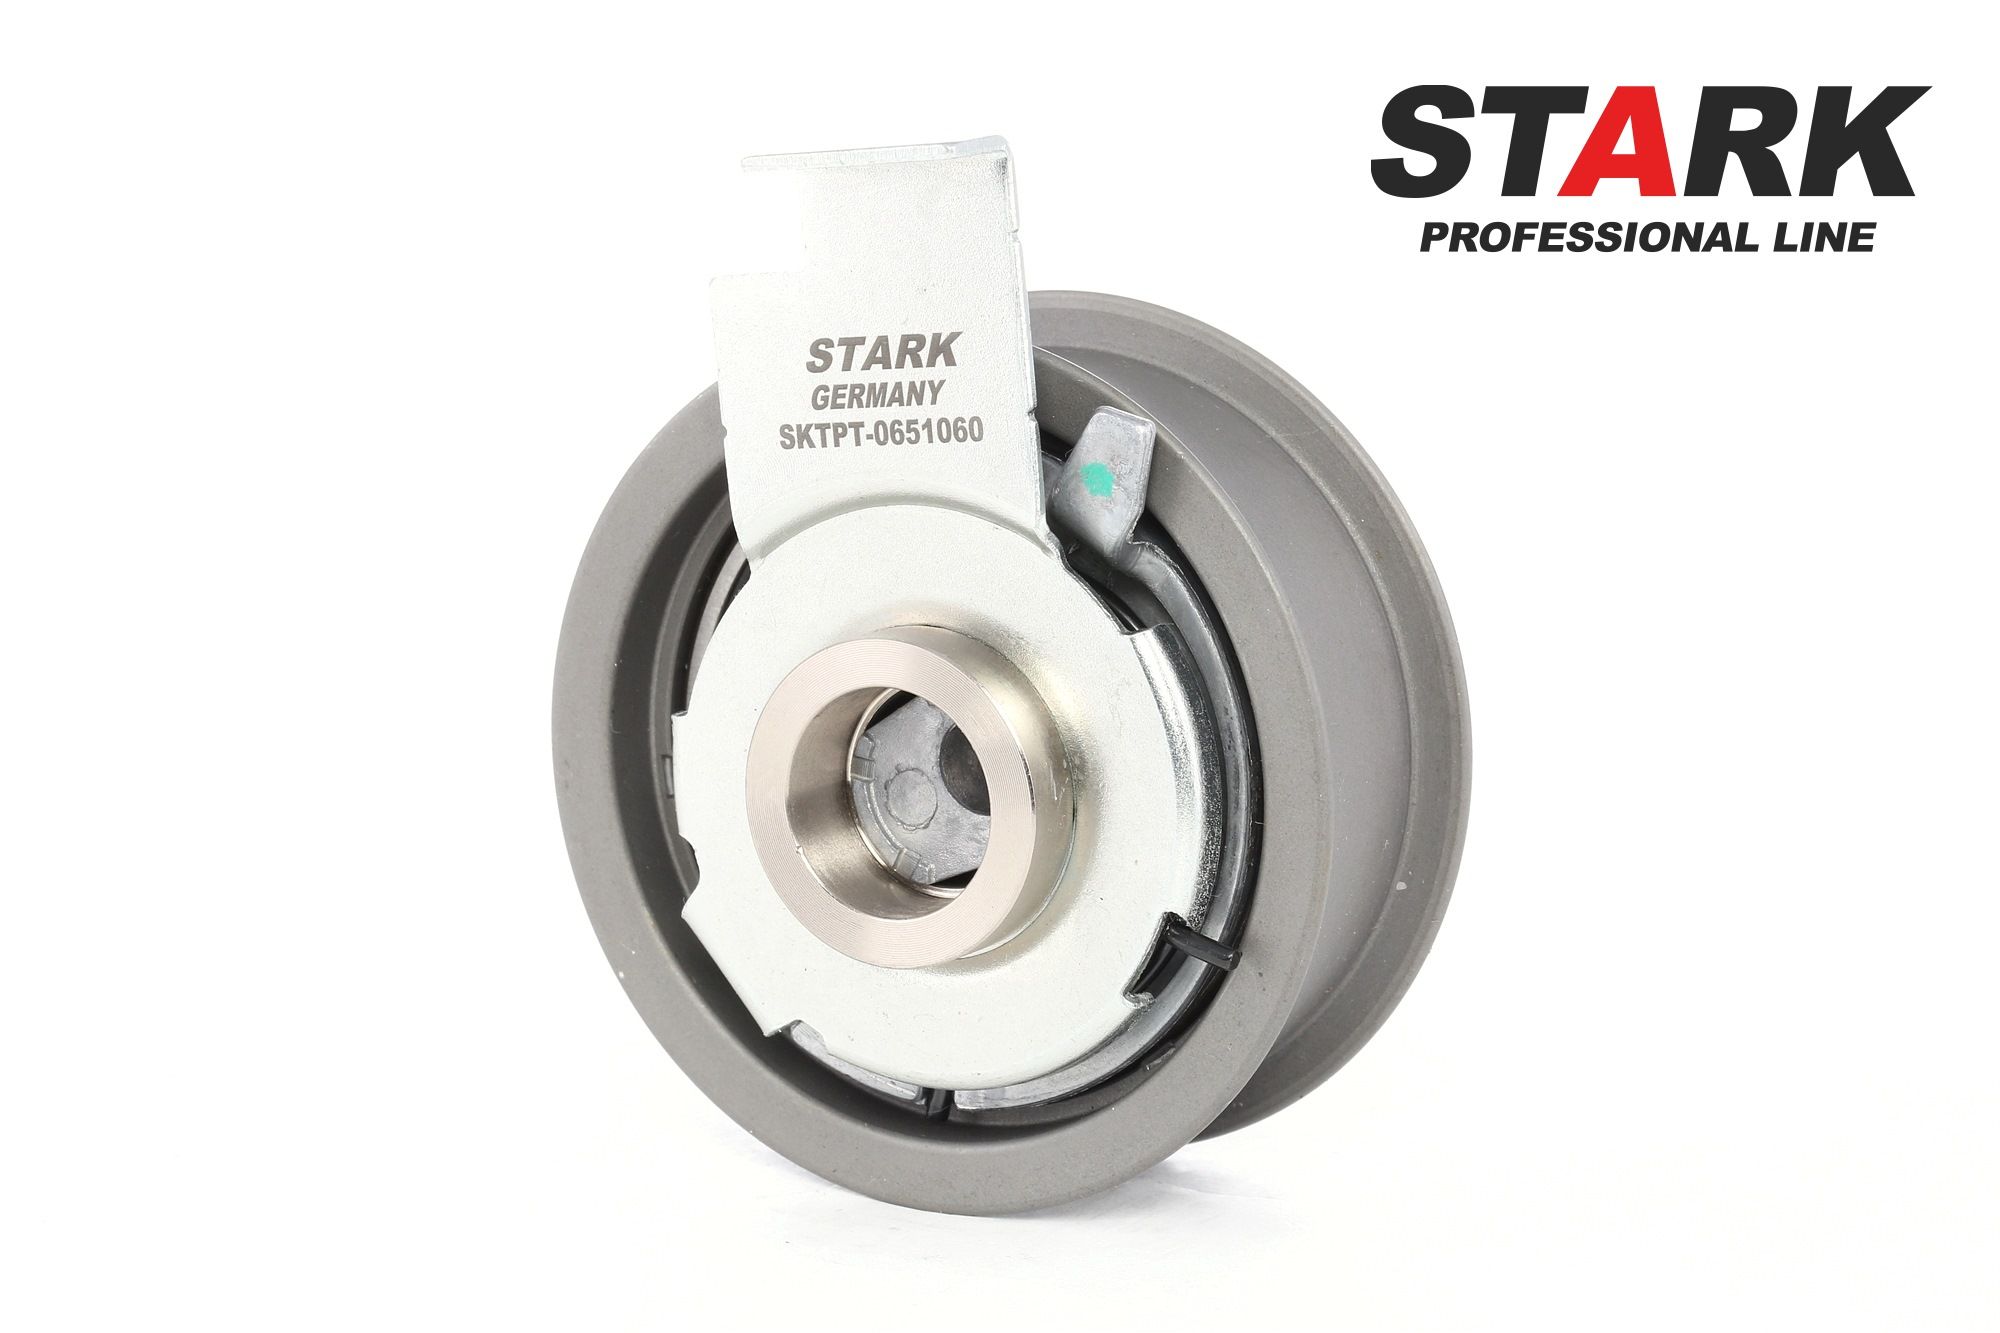 STARK SKTPT-0650160 Timing belt tensioner pulley